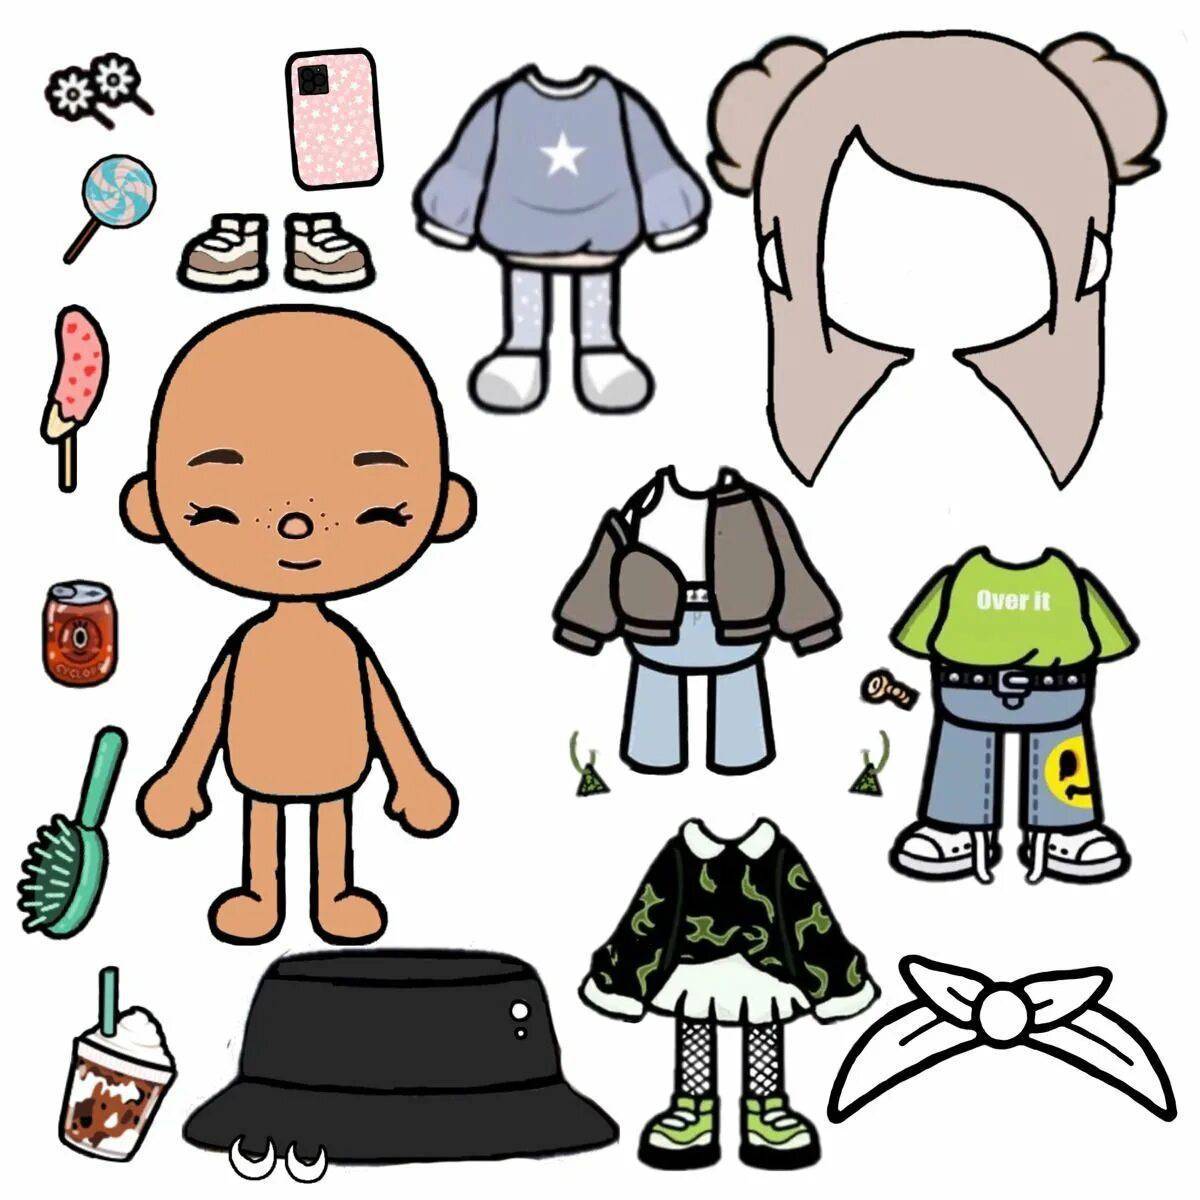 Бумажные куклы тока бока распечатать. Кукла toca boca. Бумажные человечки с одеждой. Персонаж для распечатки с одеждой. Человечки из бумаги с одеждой.